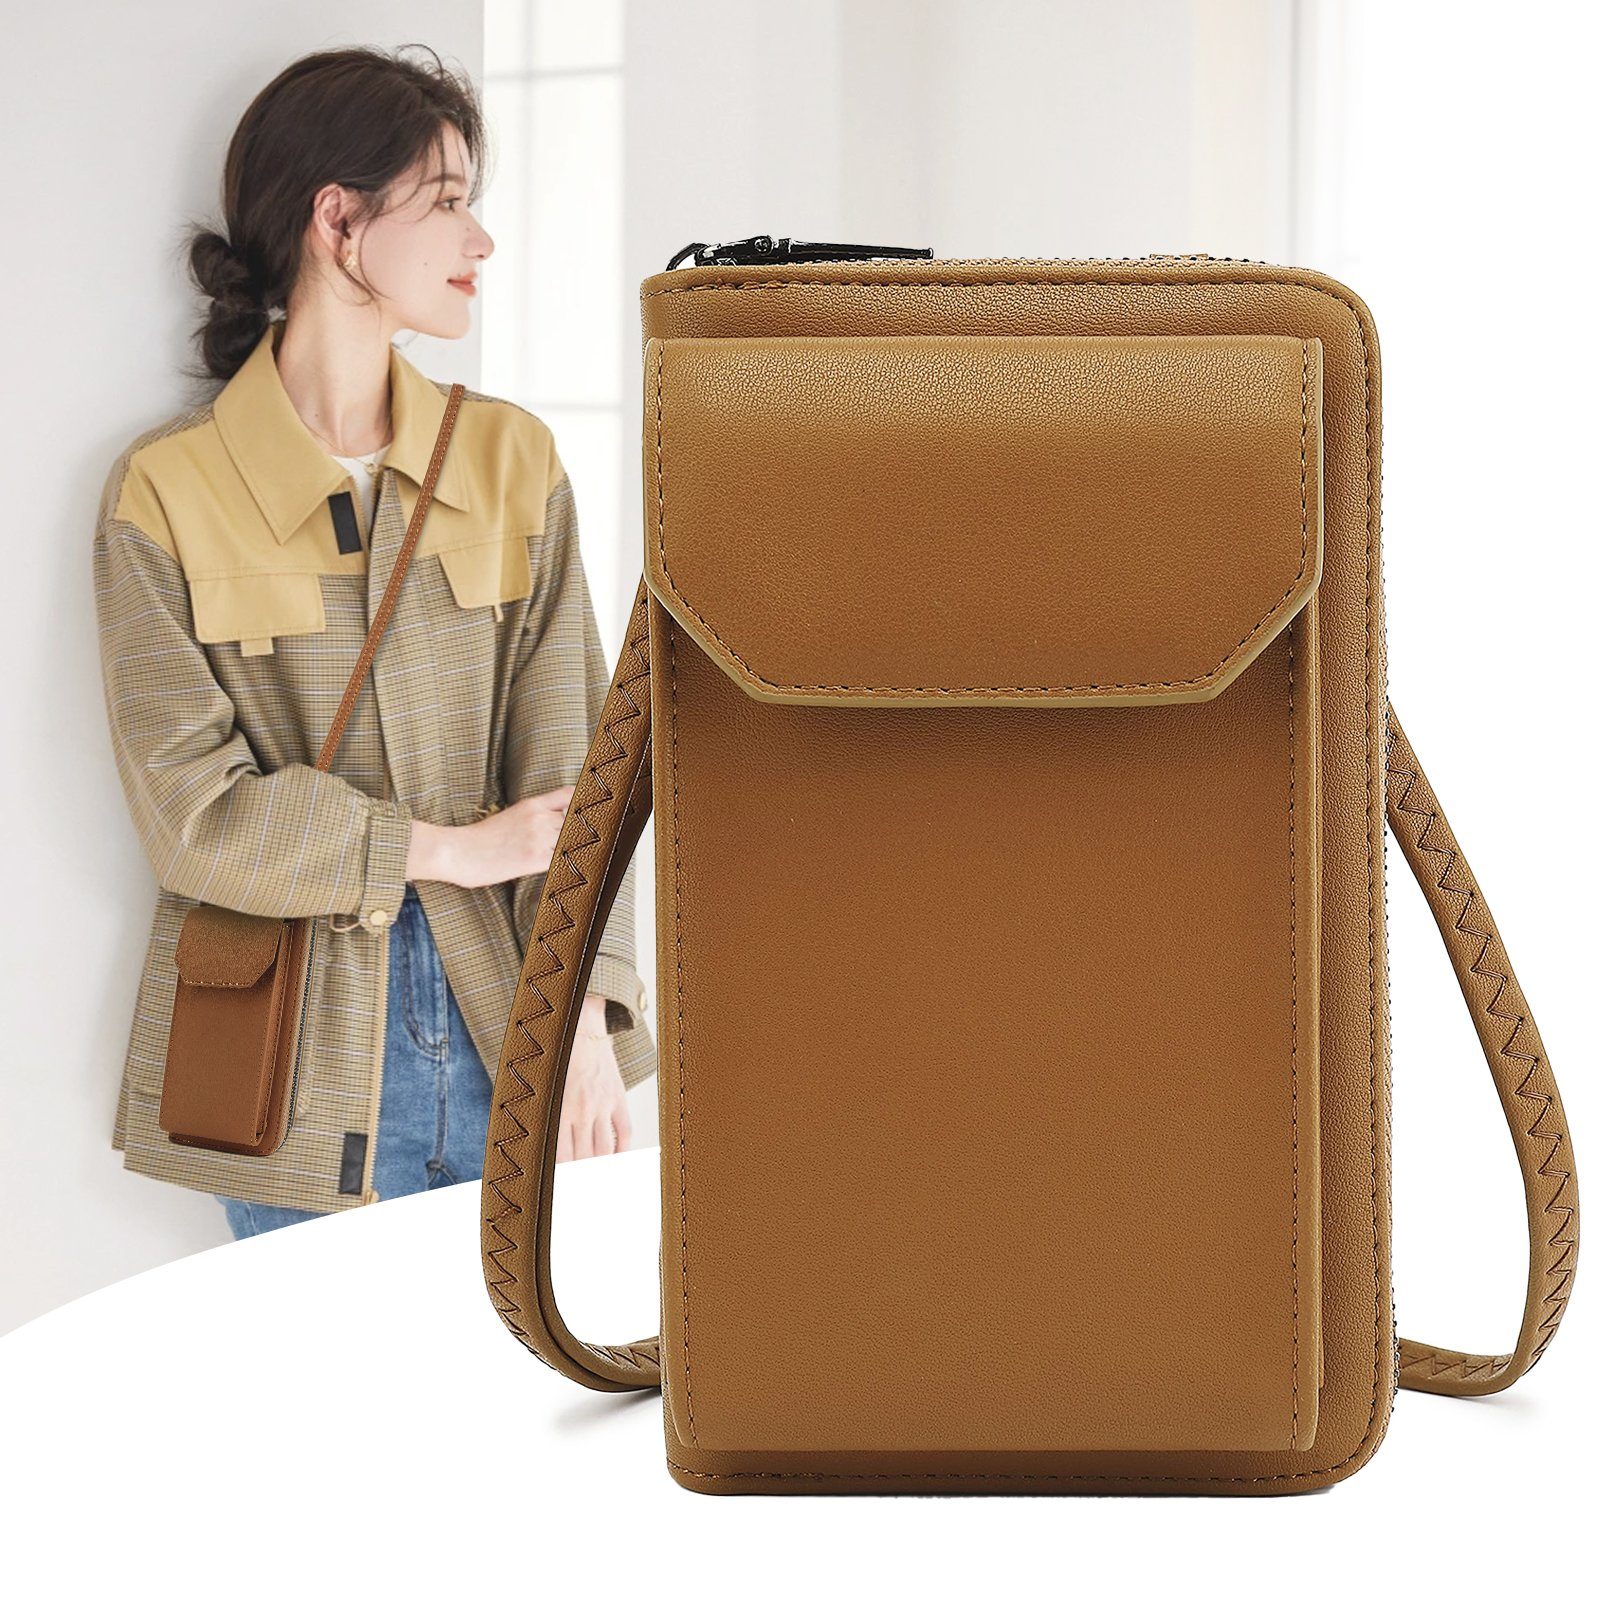 TAN.TOMI Umhängetasche Umhängetasche klein, Handy Tasche Geldbörse mit vielen Fächern, mit RFID-Schutz, abnehmbarer Schultergurt Braun